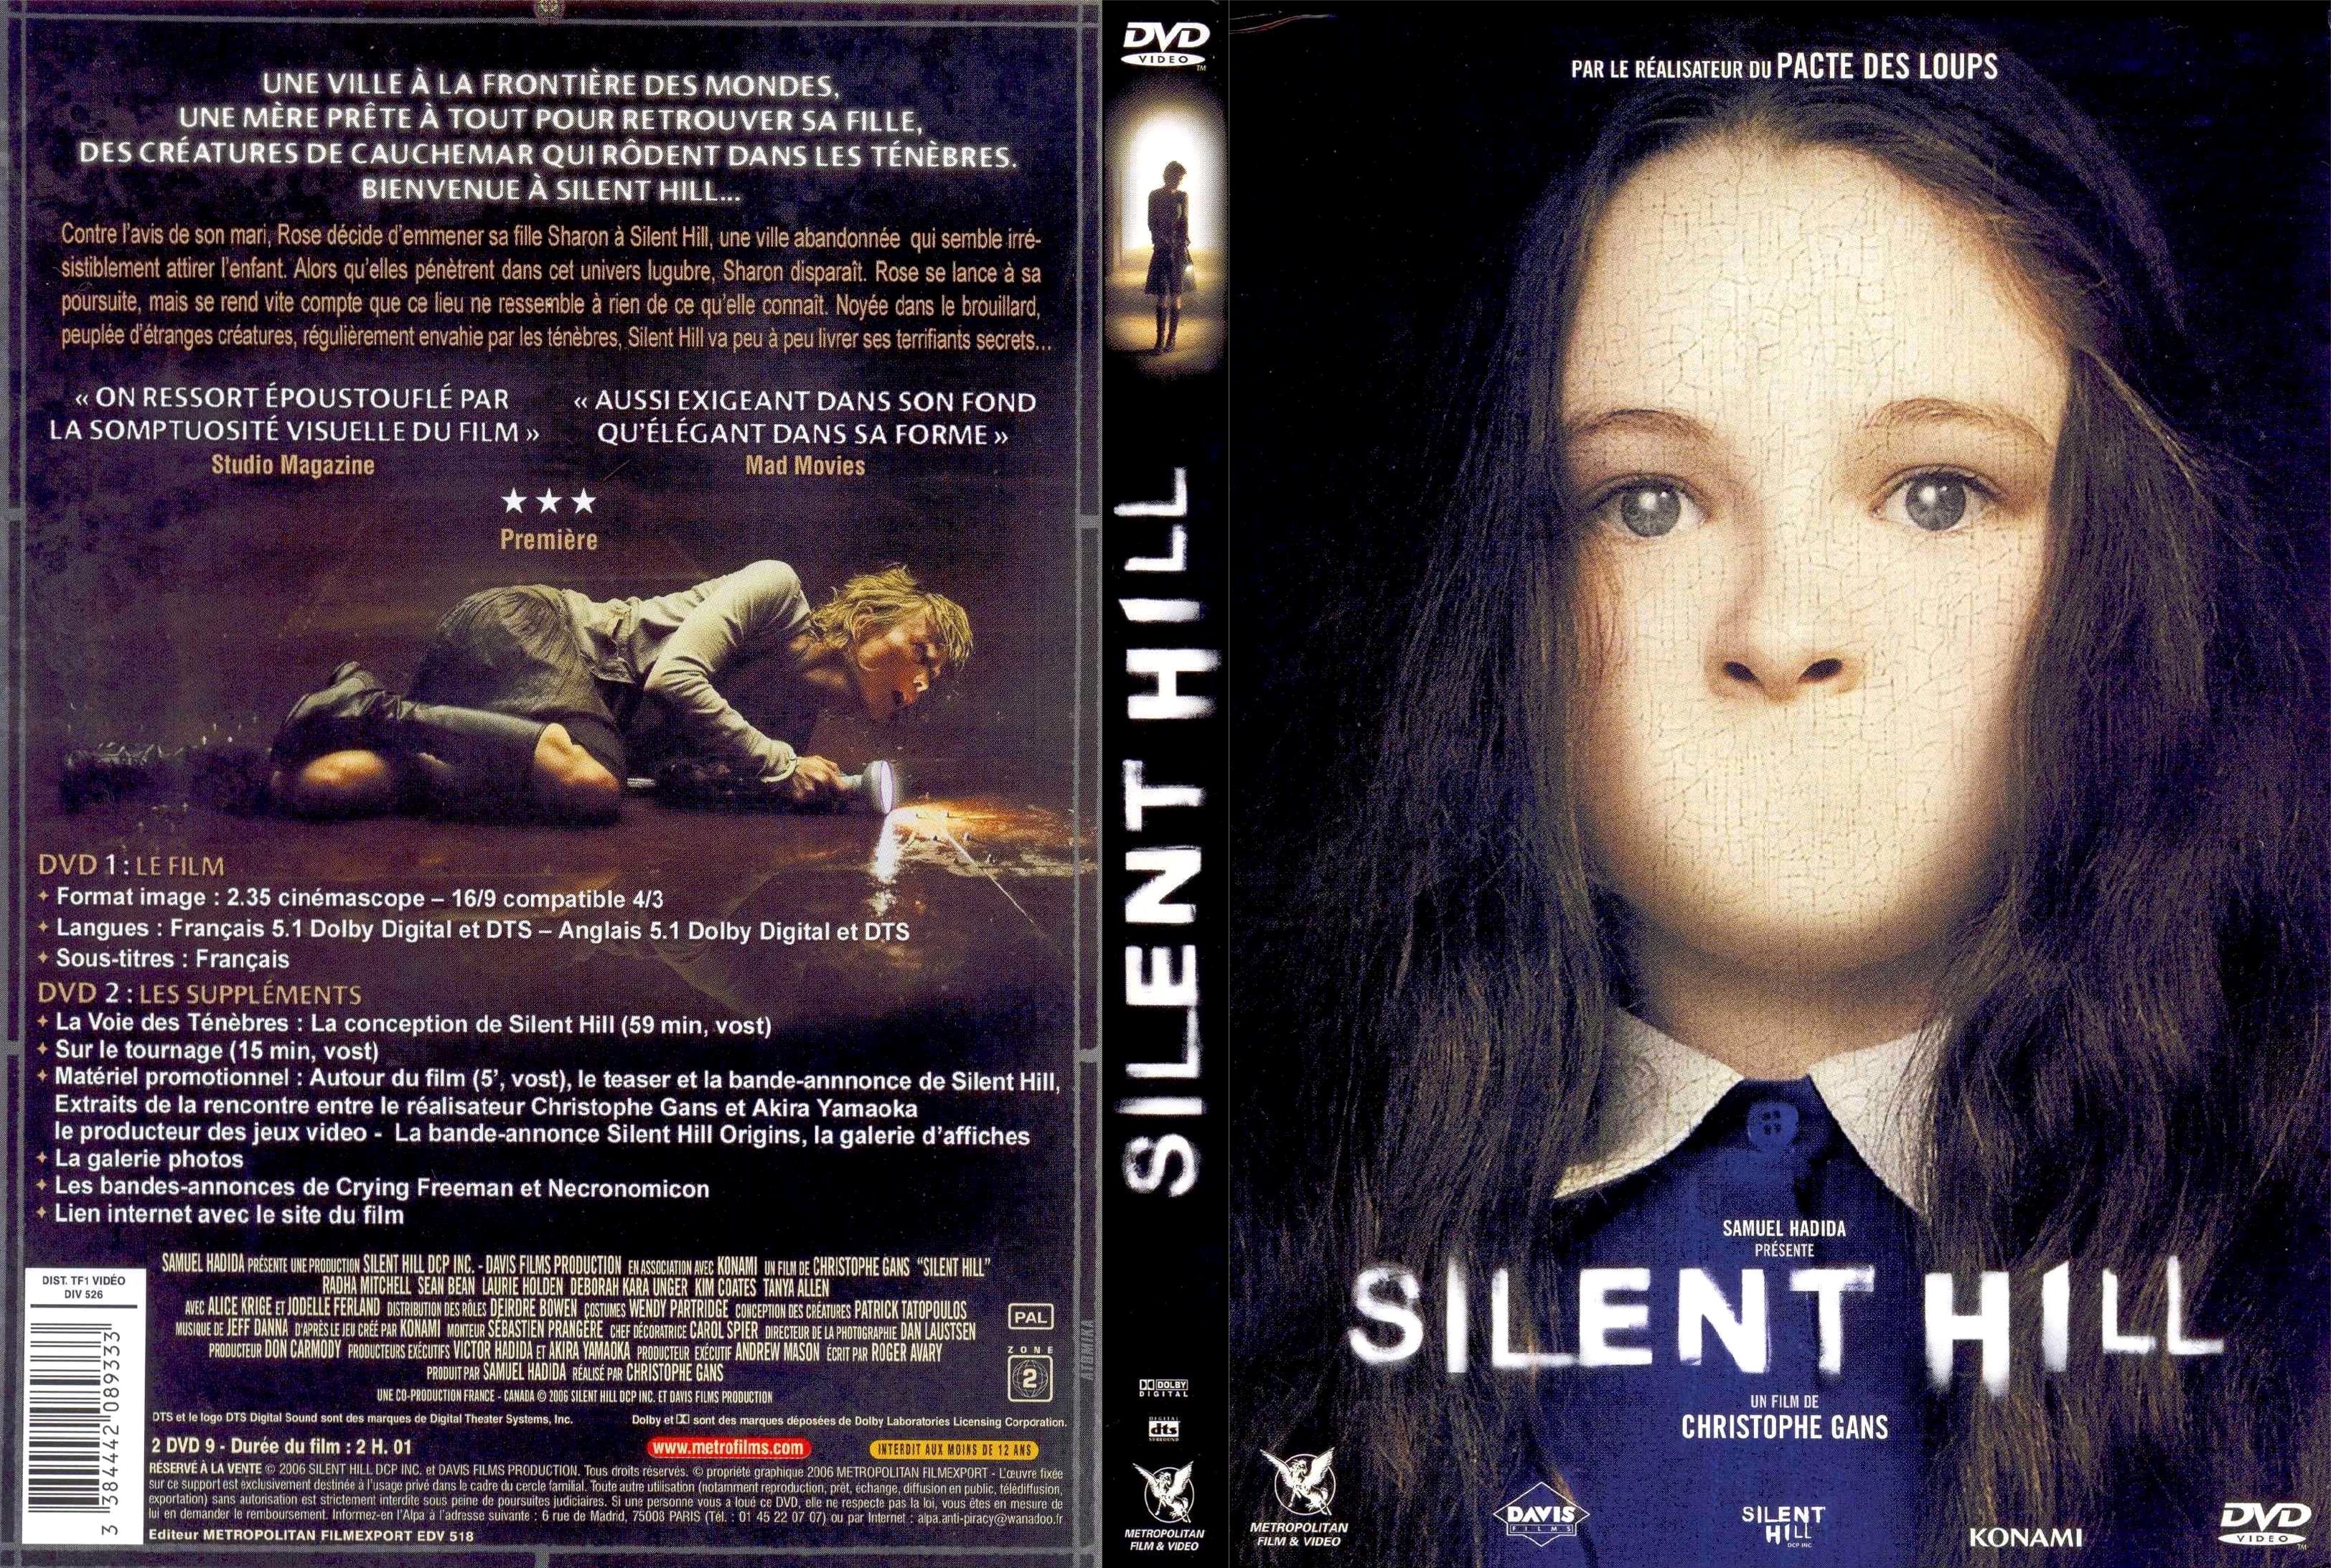 Jaquette DVD Silent Hill v2